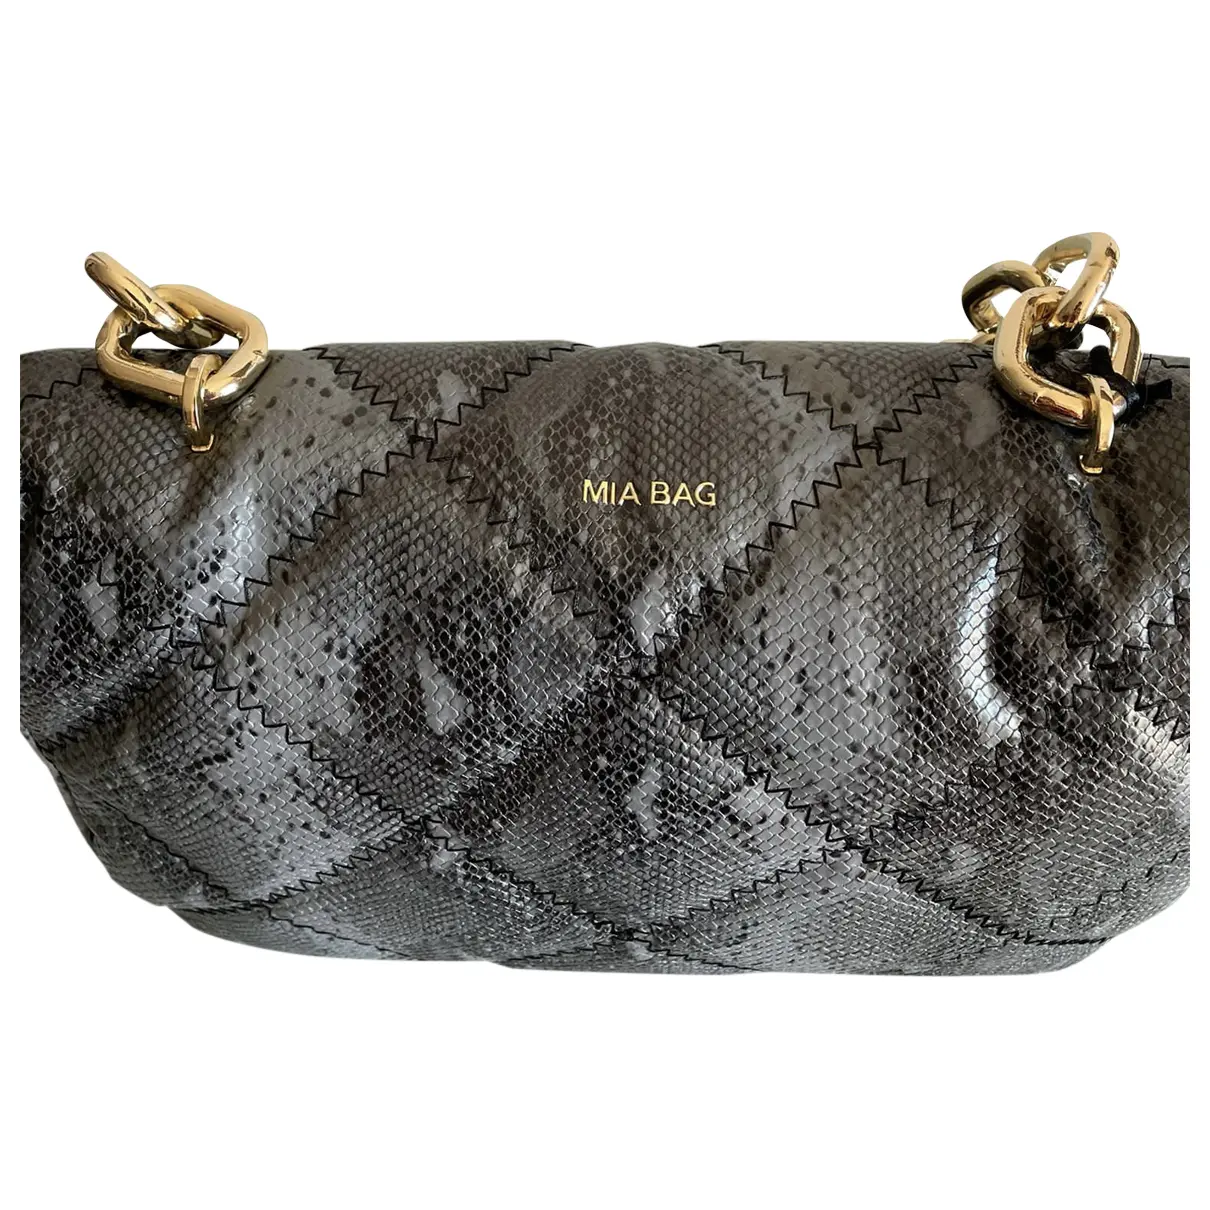 Leather handbag Mia Bag